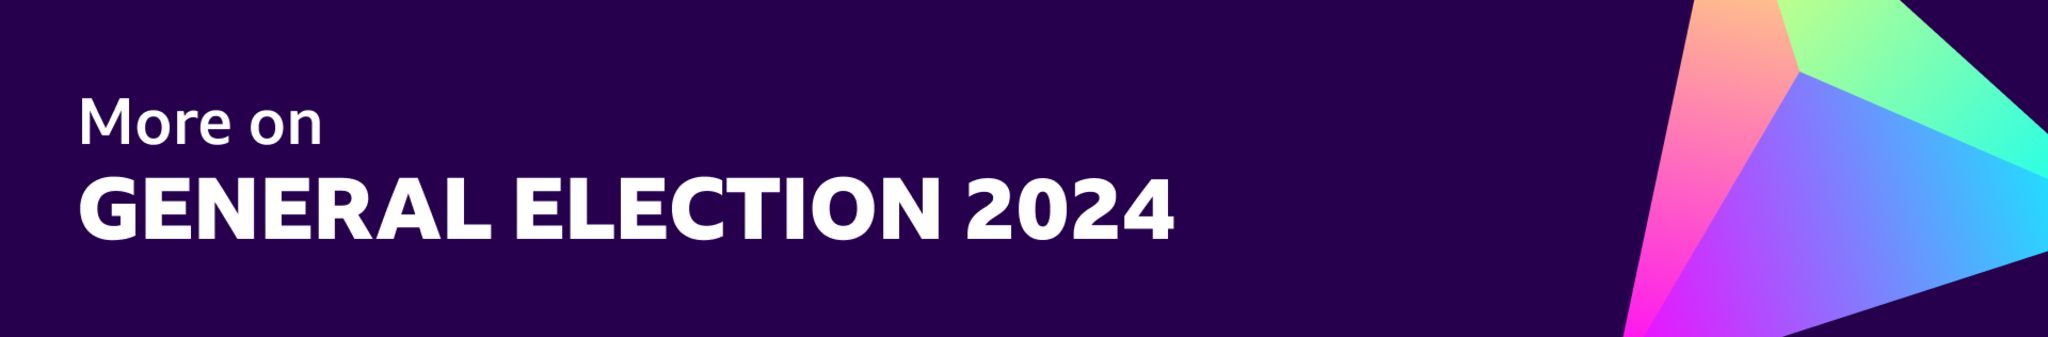 General election 2024 banner